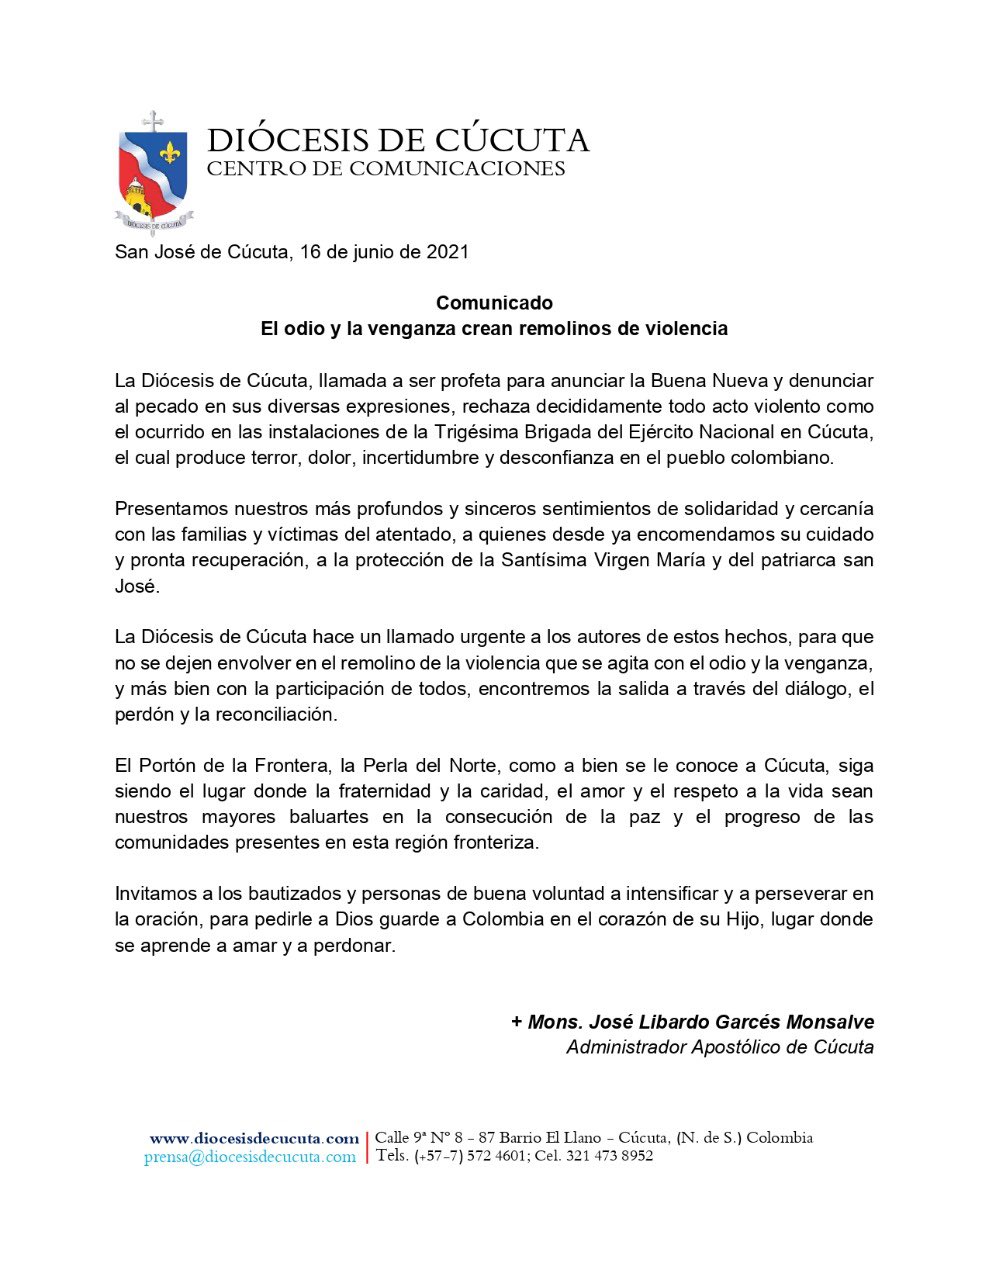 Comunicado de la Diócesis de Cúcuta ante atentado terrorista en la Tigésima Brigada del Ejercito en la ciudad.